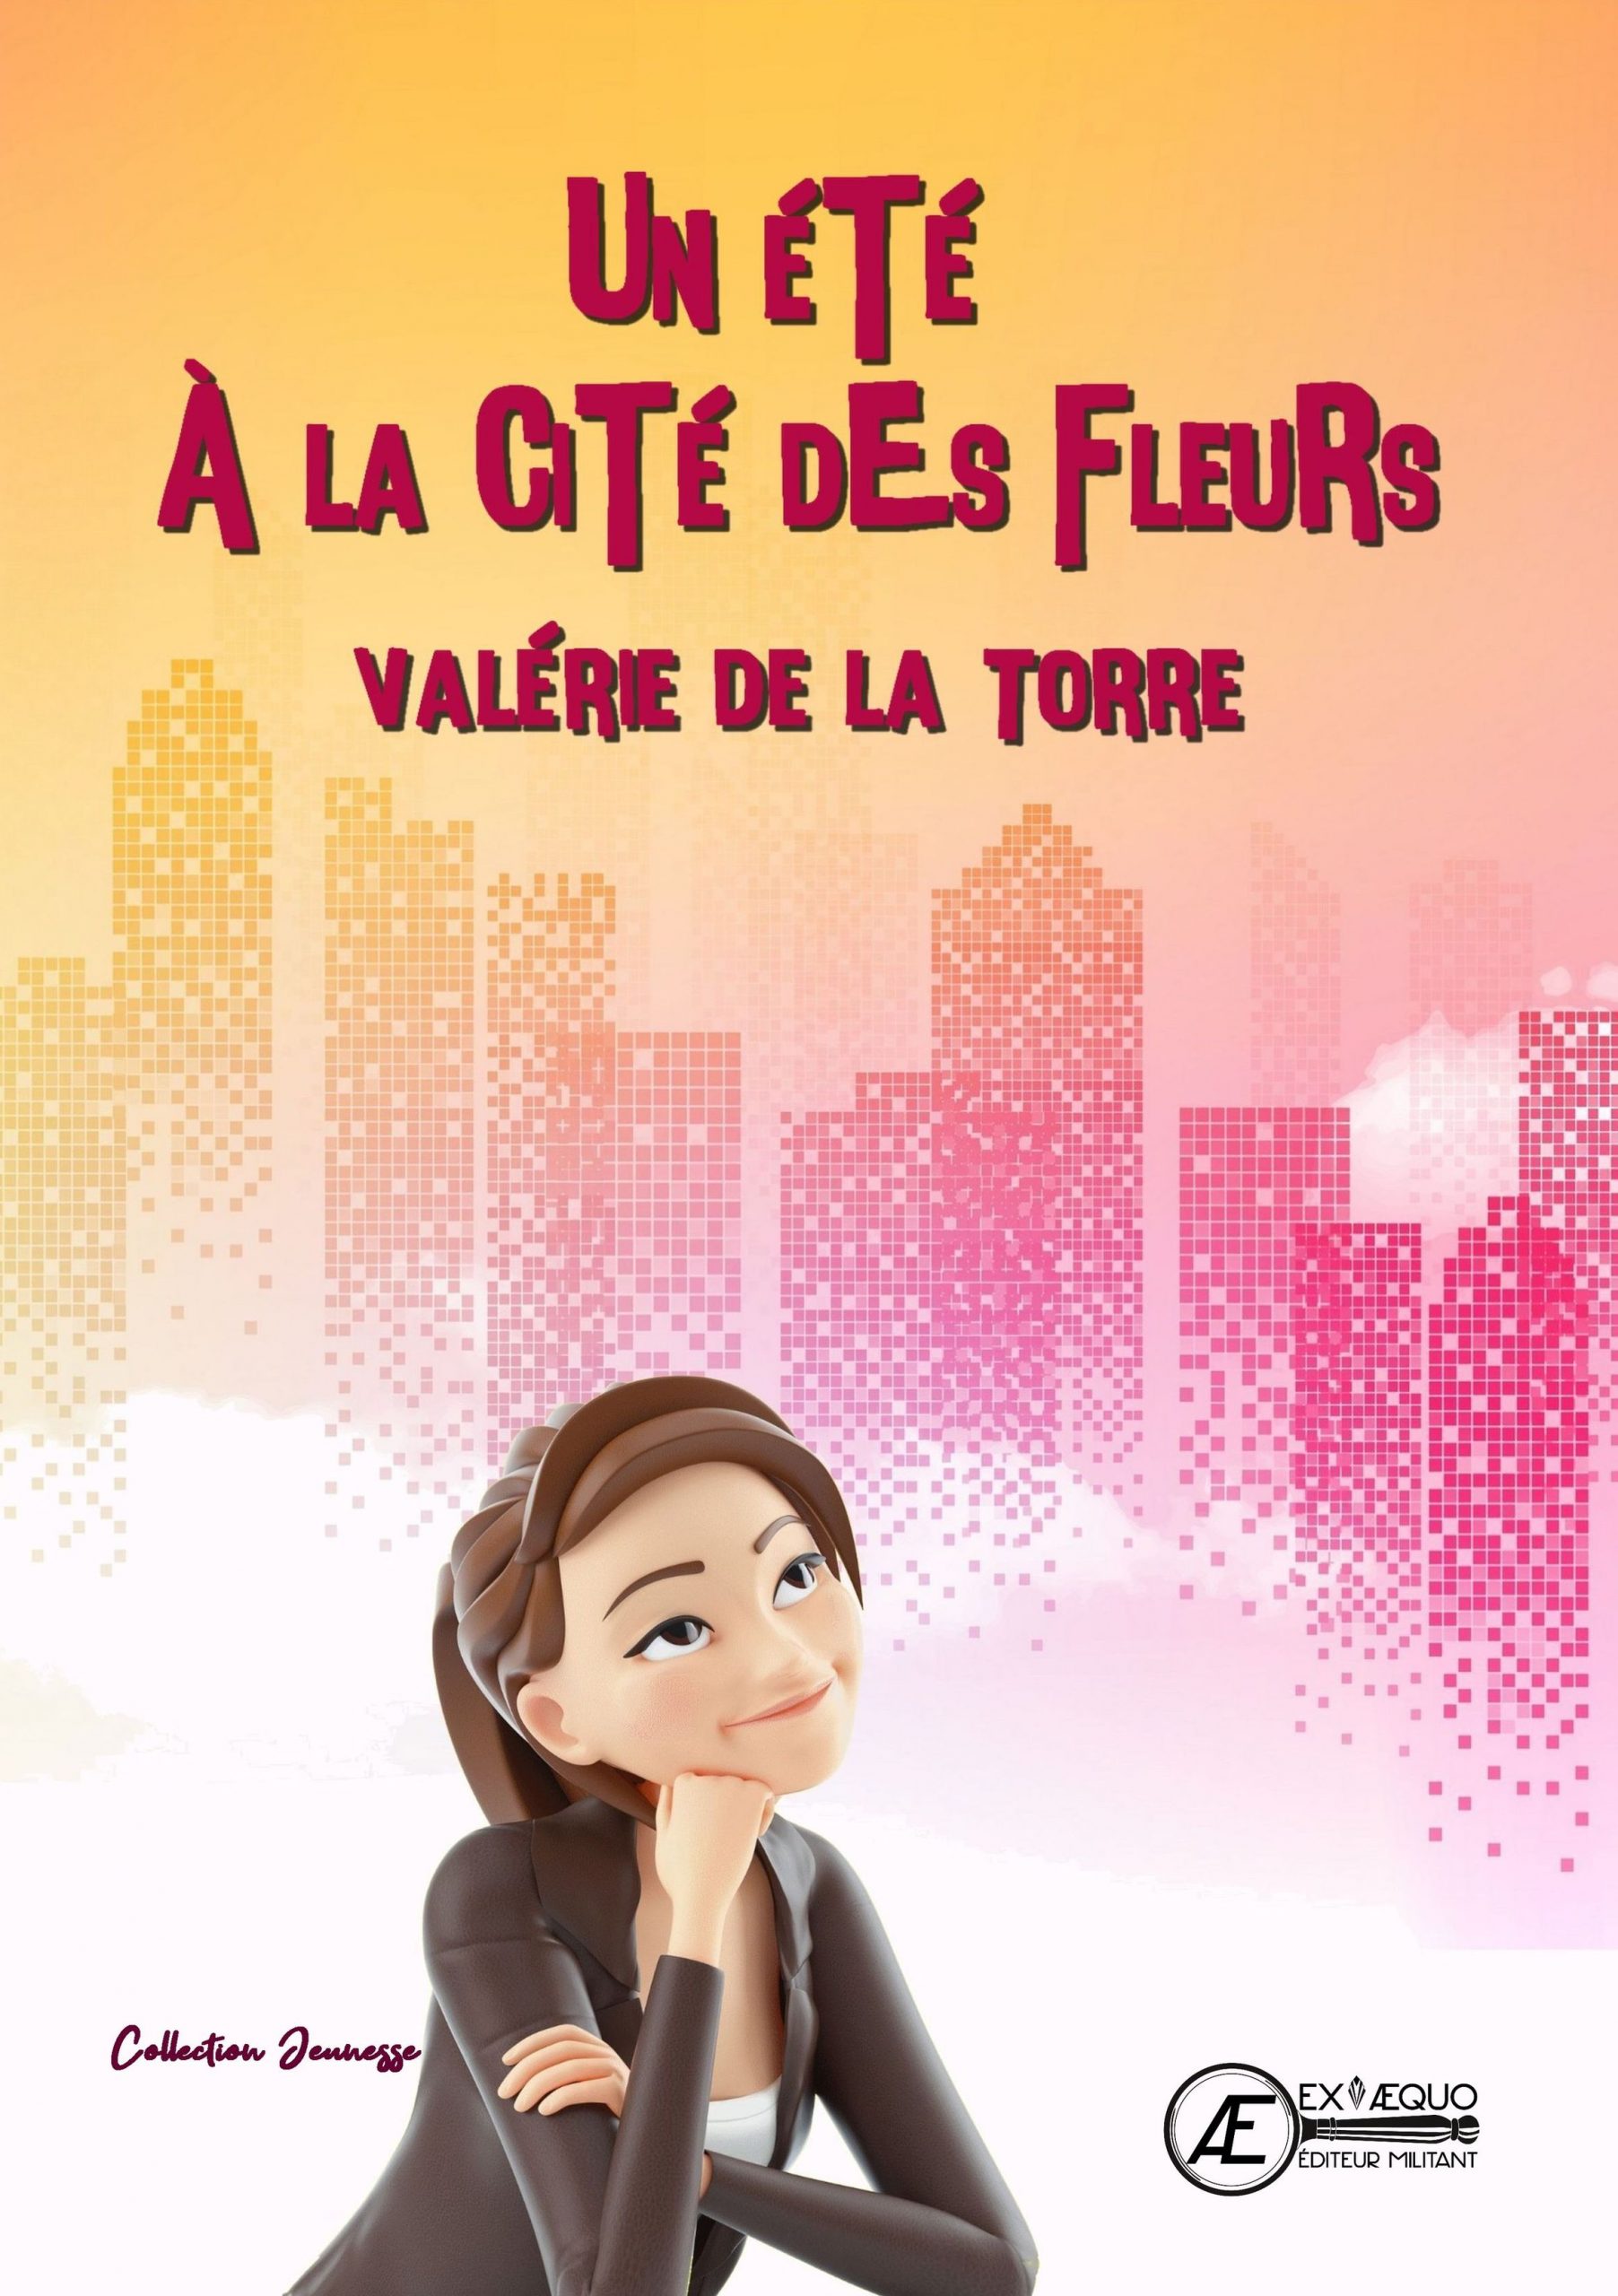 You are currently viewing Un été à la cité des fleurs, de Valérie de la Torre